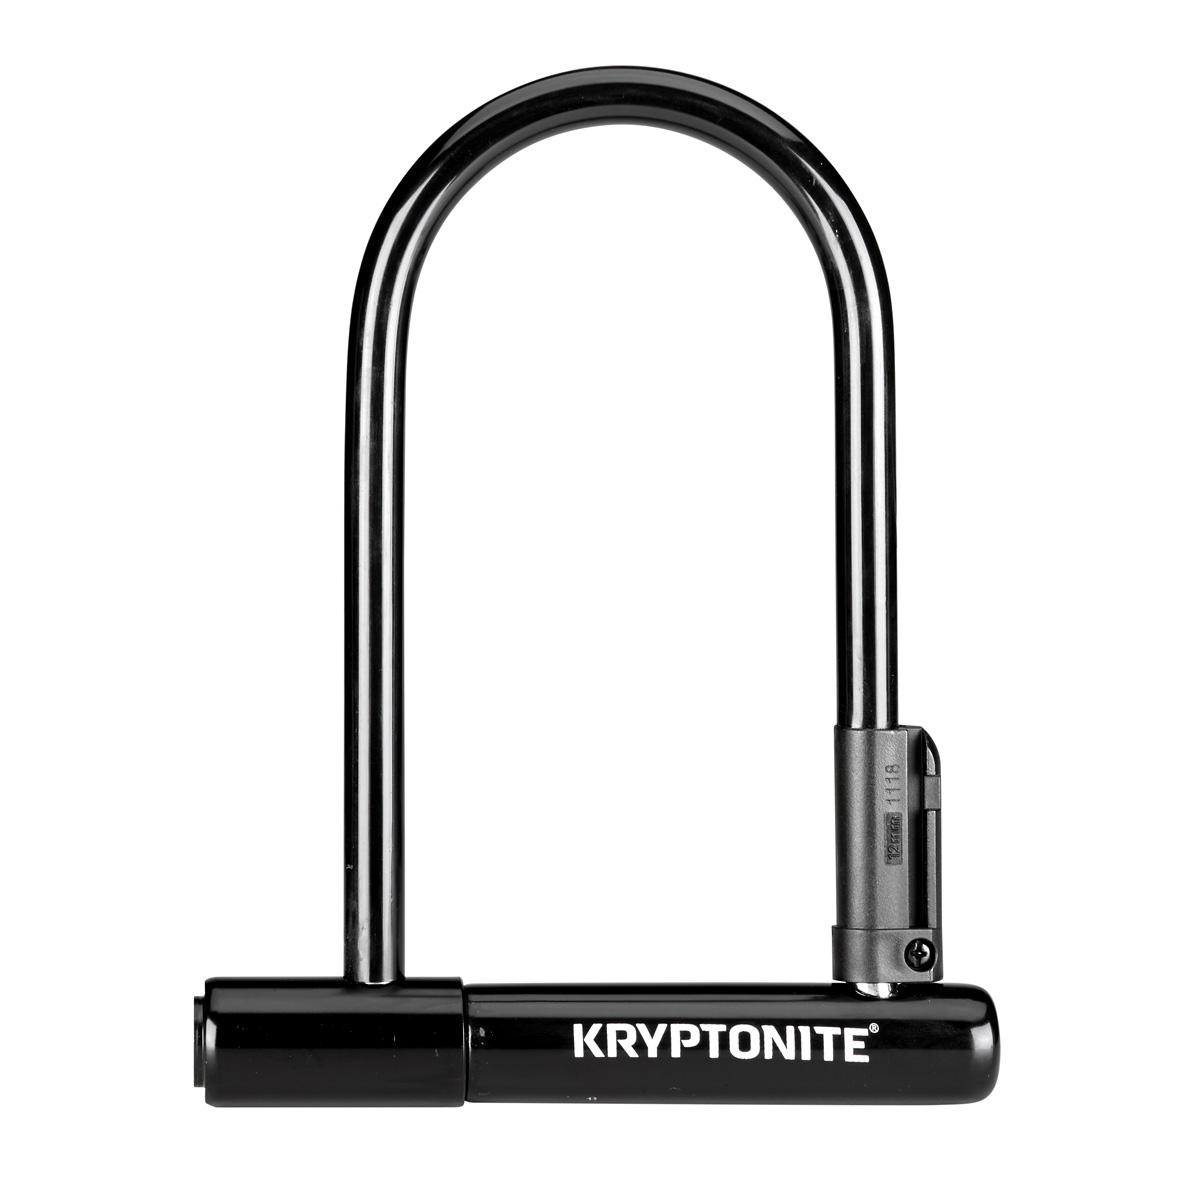 Kryptonite 12mm U-Lock Bicycle Lock for $10